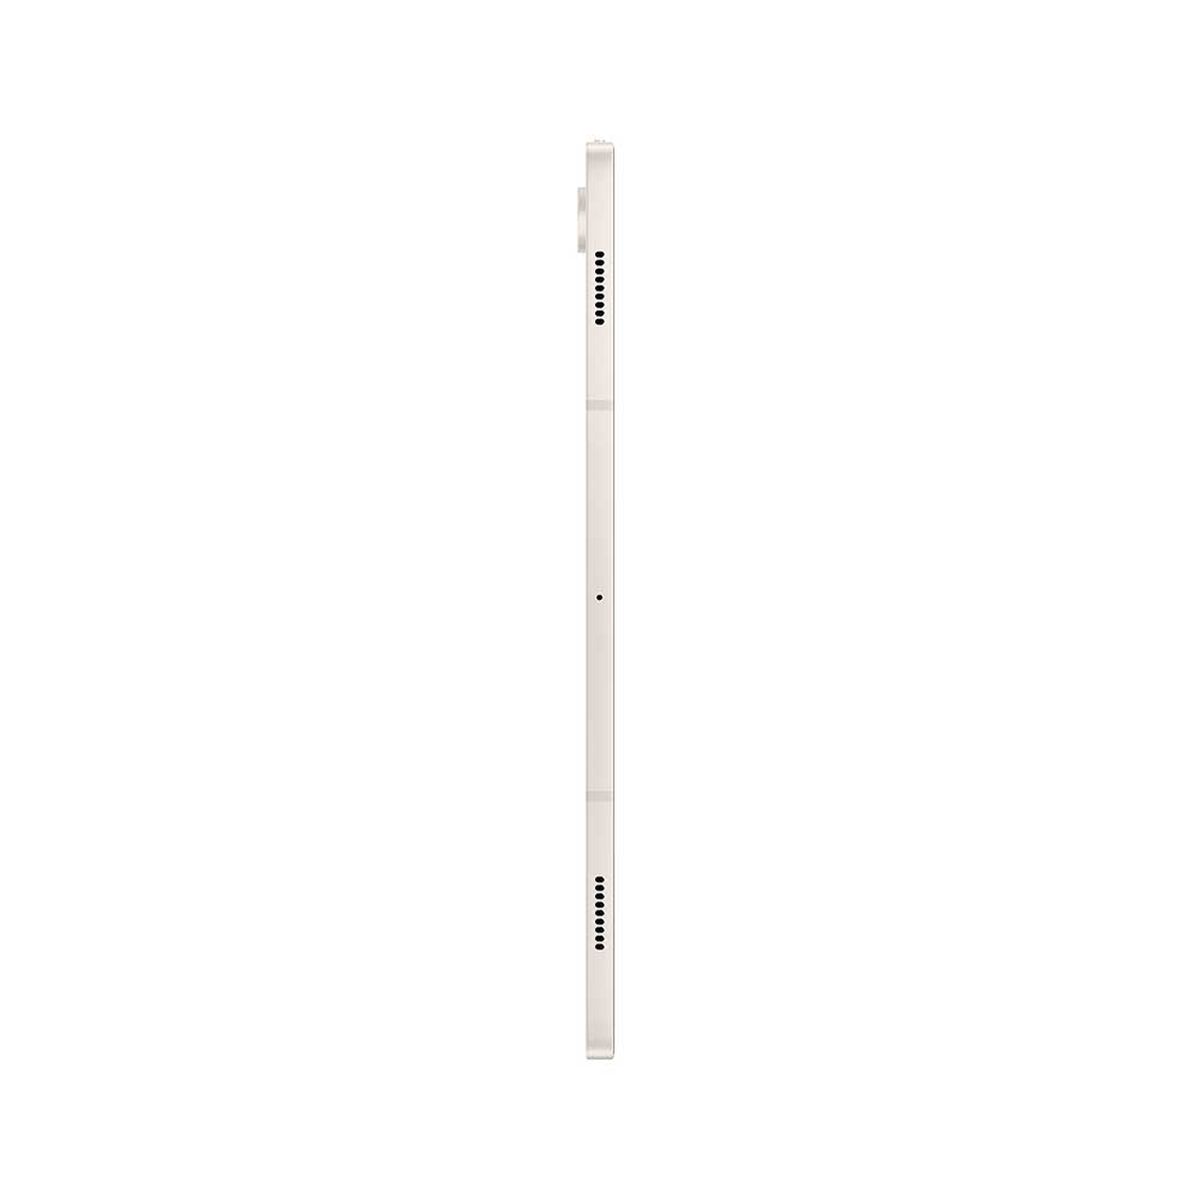 Tablet Samsung Galaxy Tab S9 + Octa-Core 12GB 256GB 12,4" Beige